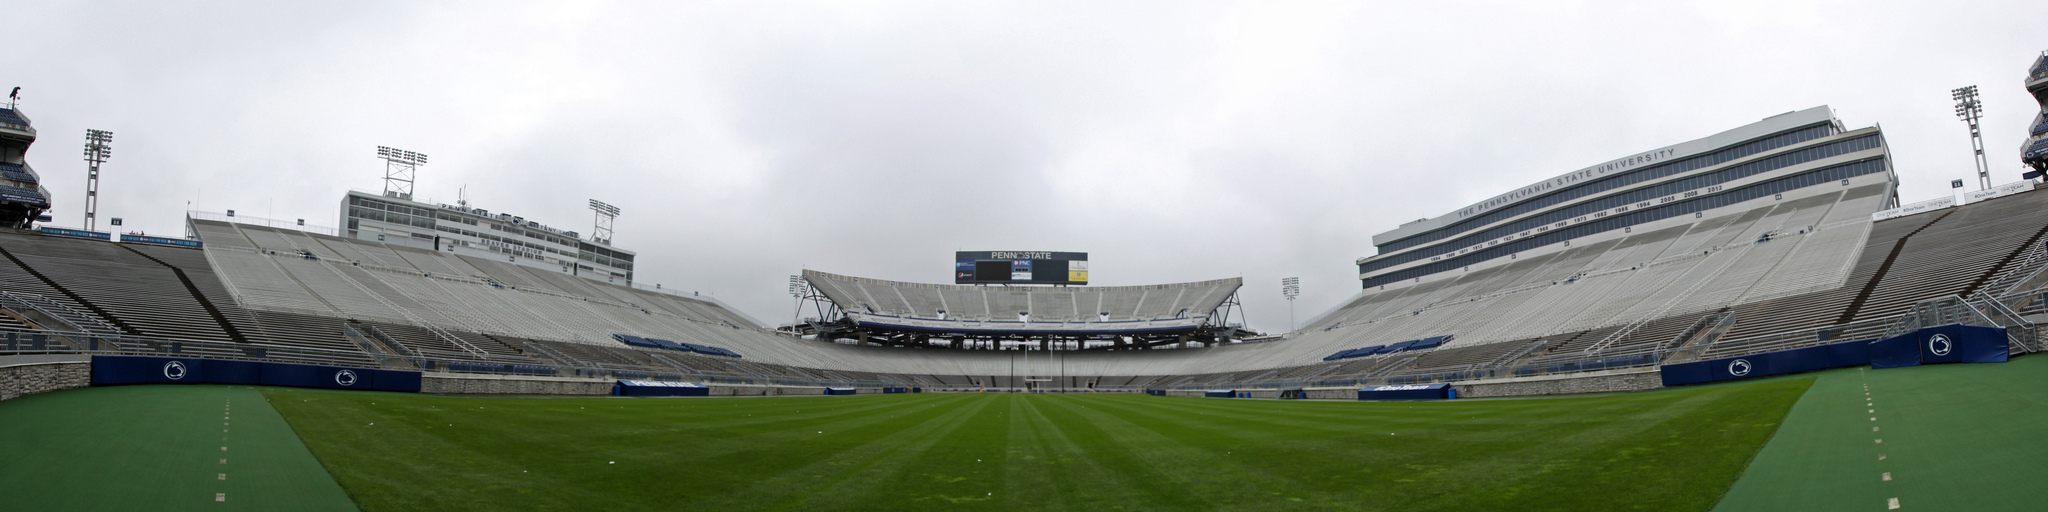 Beaver Stadium – StadiumDB.com